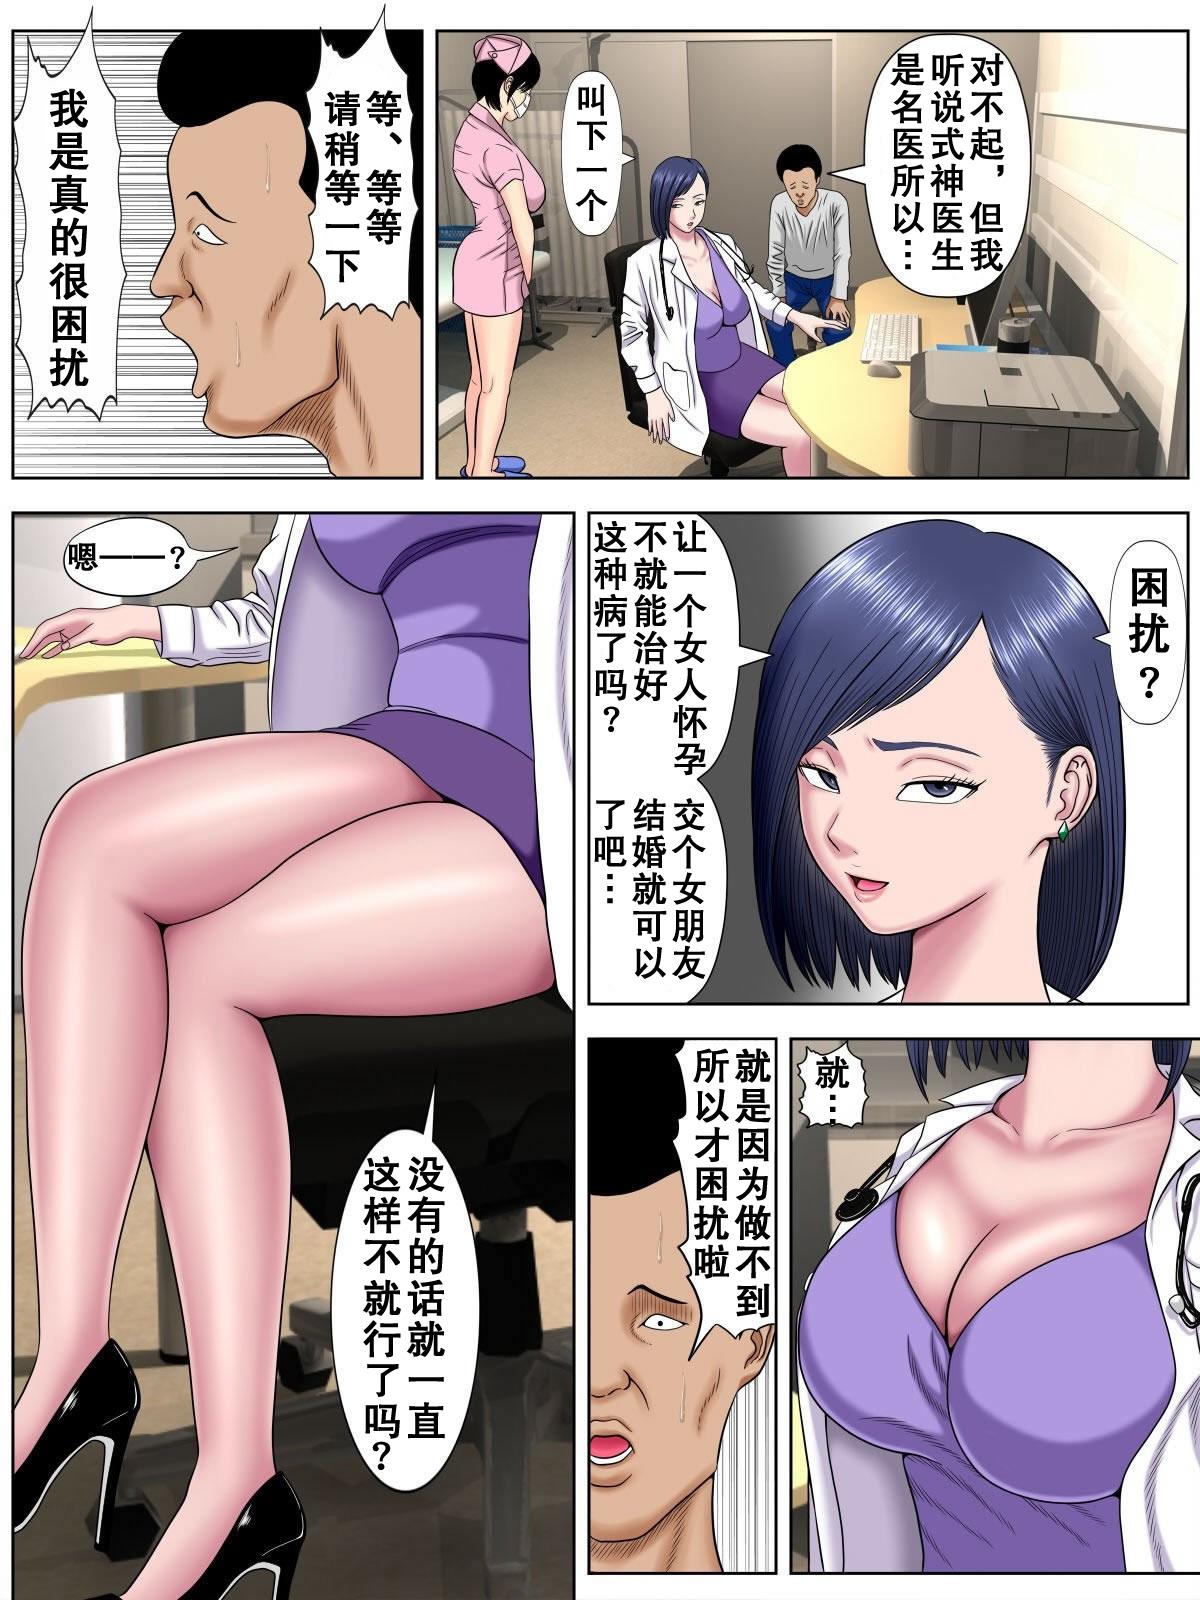 Sex Shinai to Shinu Yamai 3 34